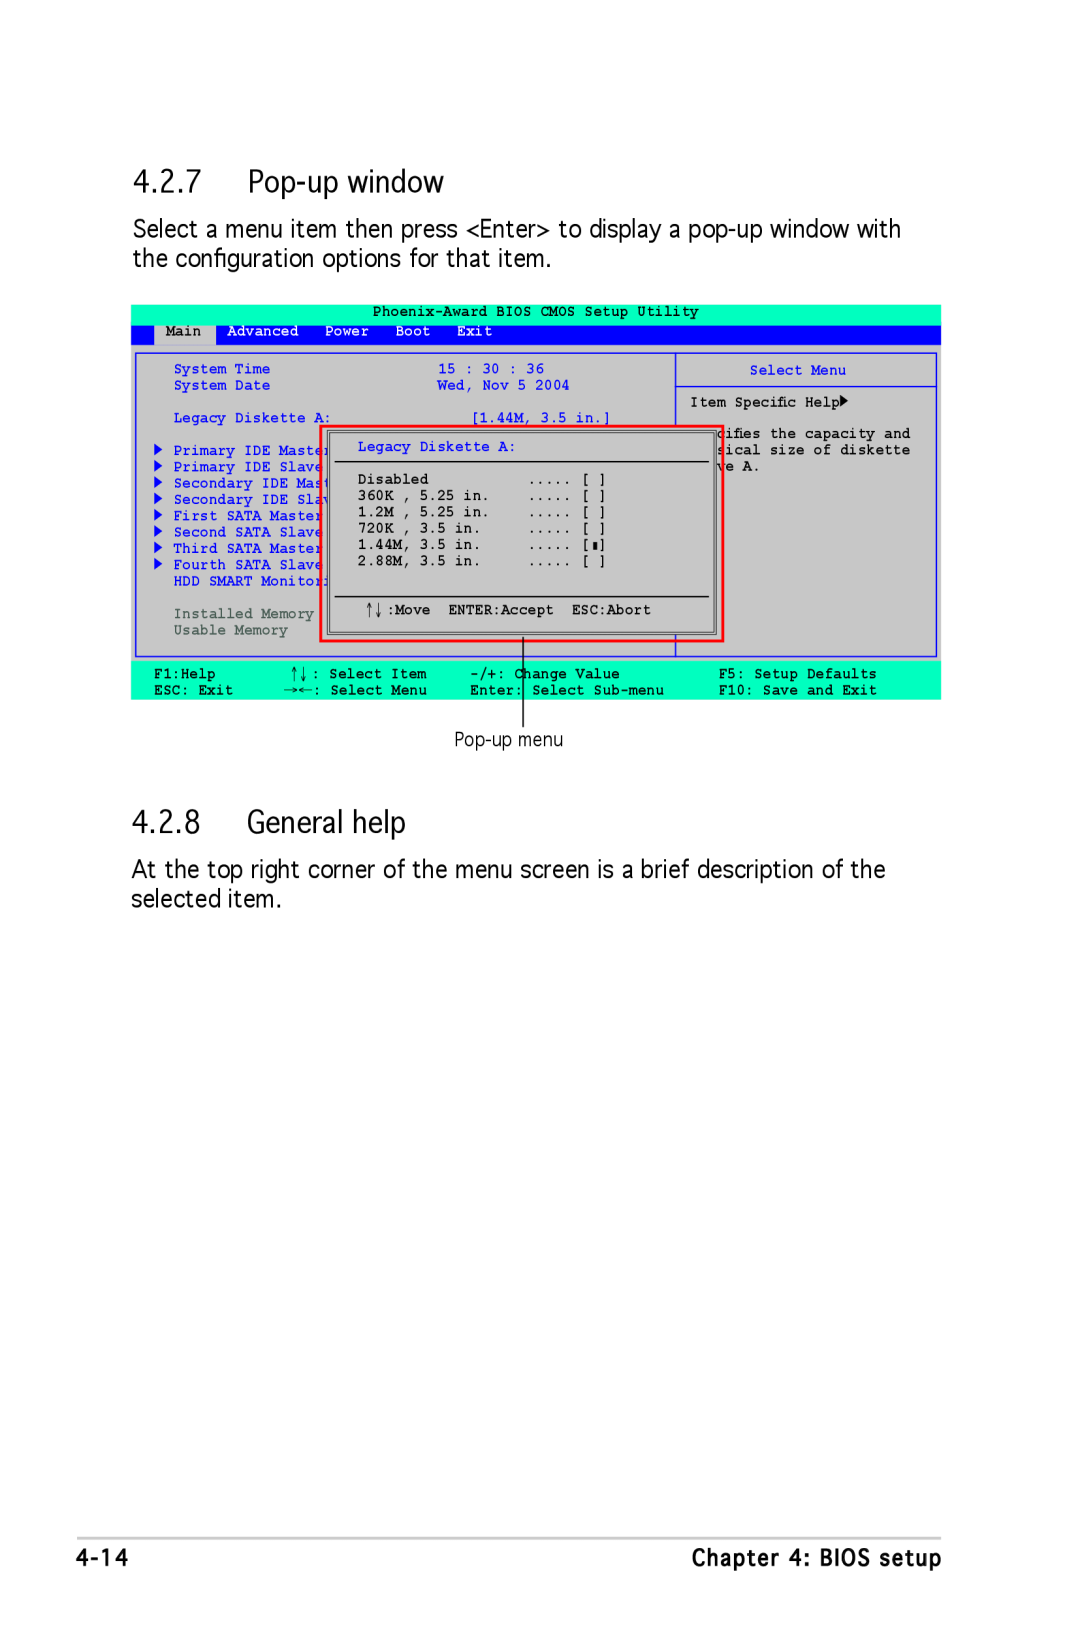 Asus A8N-SLI SE manual Pop-up window, General help, Pop-up menu 